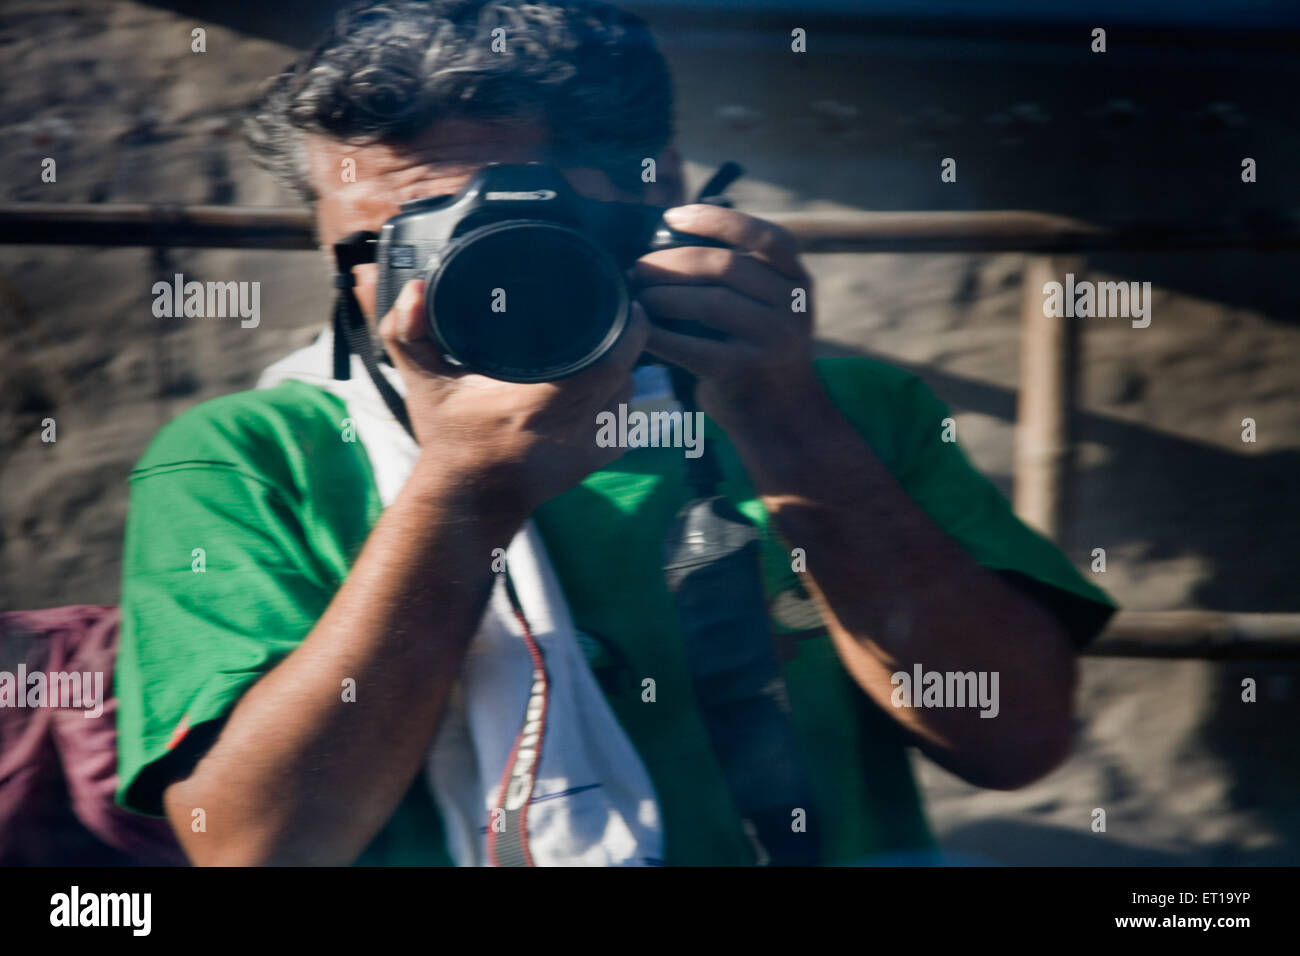 Fondos para fotógrafos fotografías e imágenes de alta resolución - Alamy